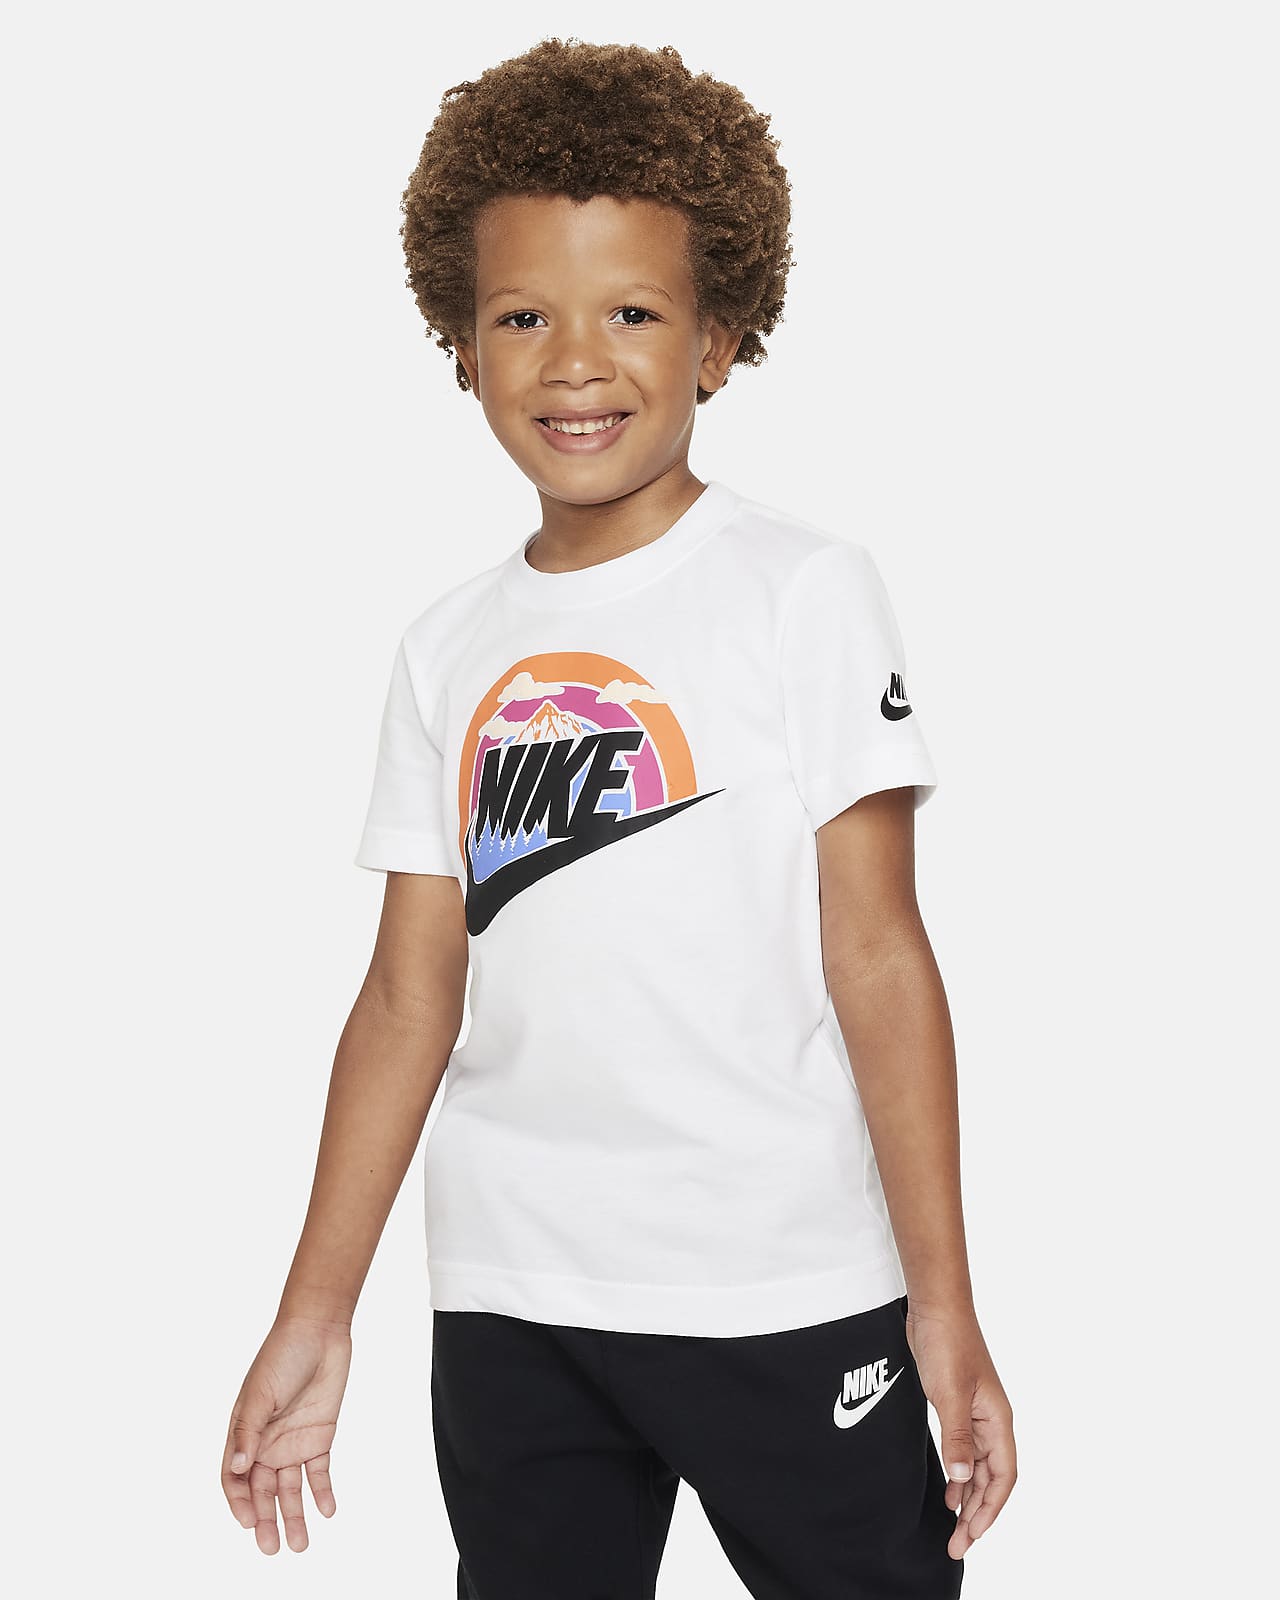 Little Tee Wilderness Nike T-Shirt. Kids Futura